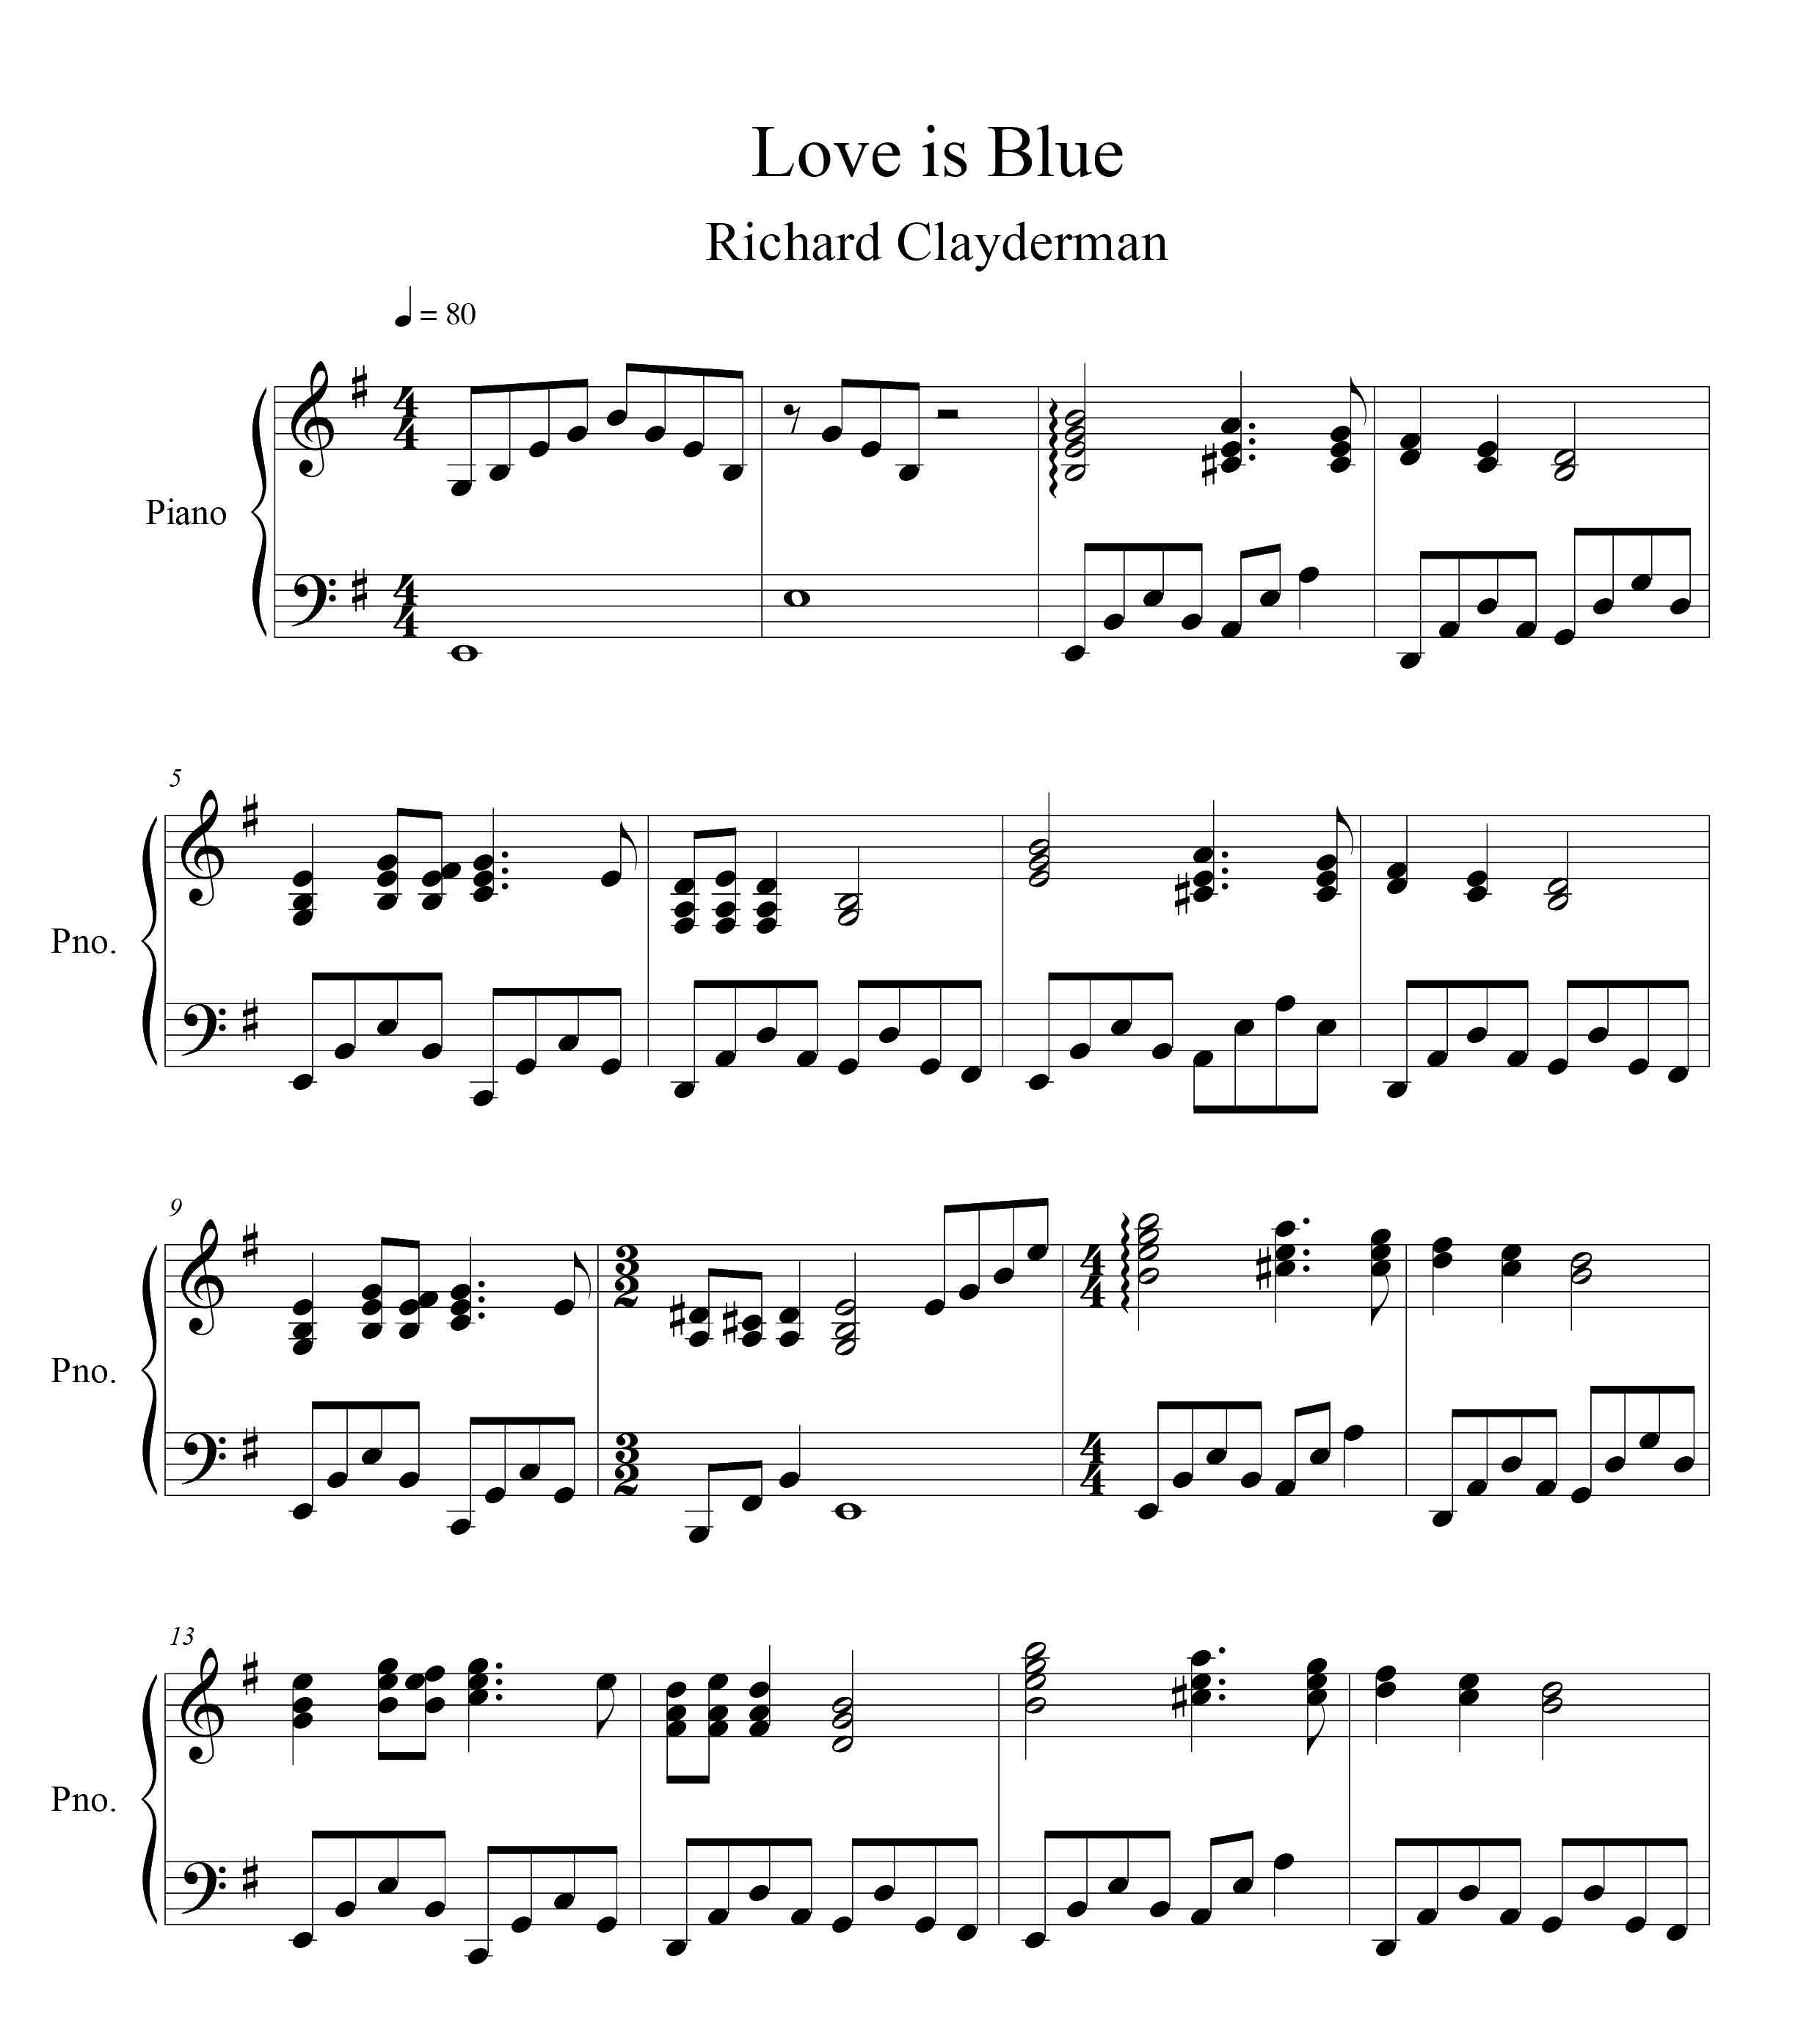 نت پیانوی قطعه Love is Blue از ریچارد کلایدرمن